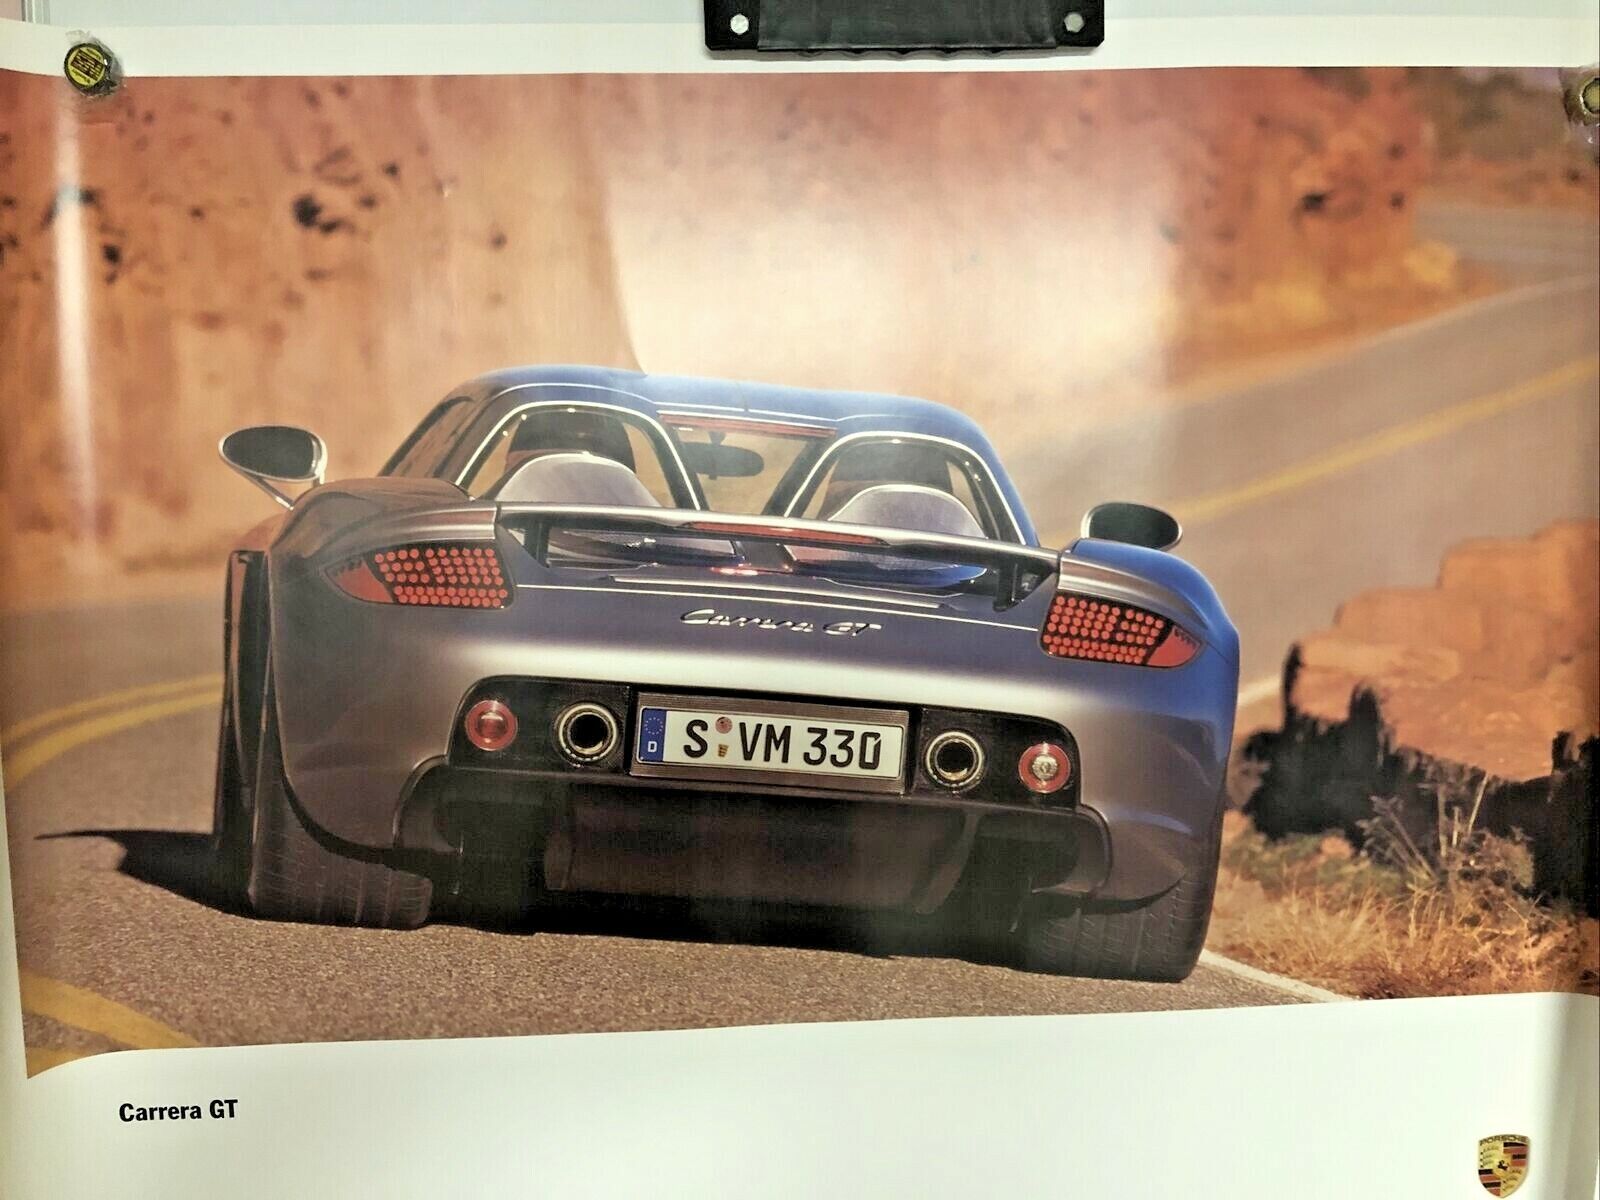 2003 Original Porsche Carrera GT Poster Rare And Awesome